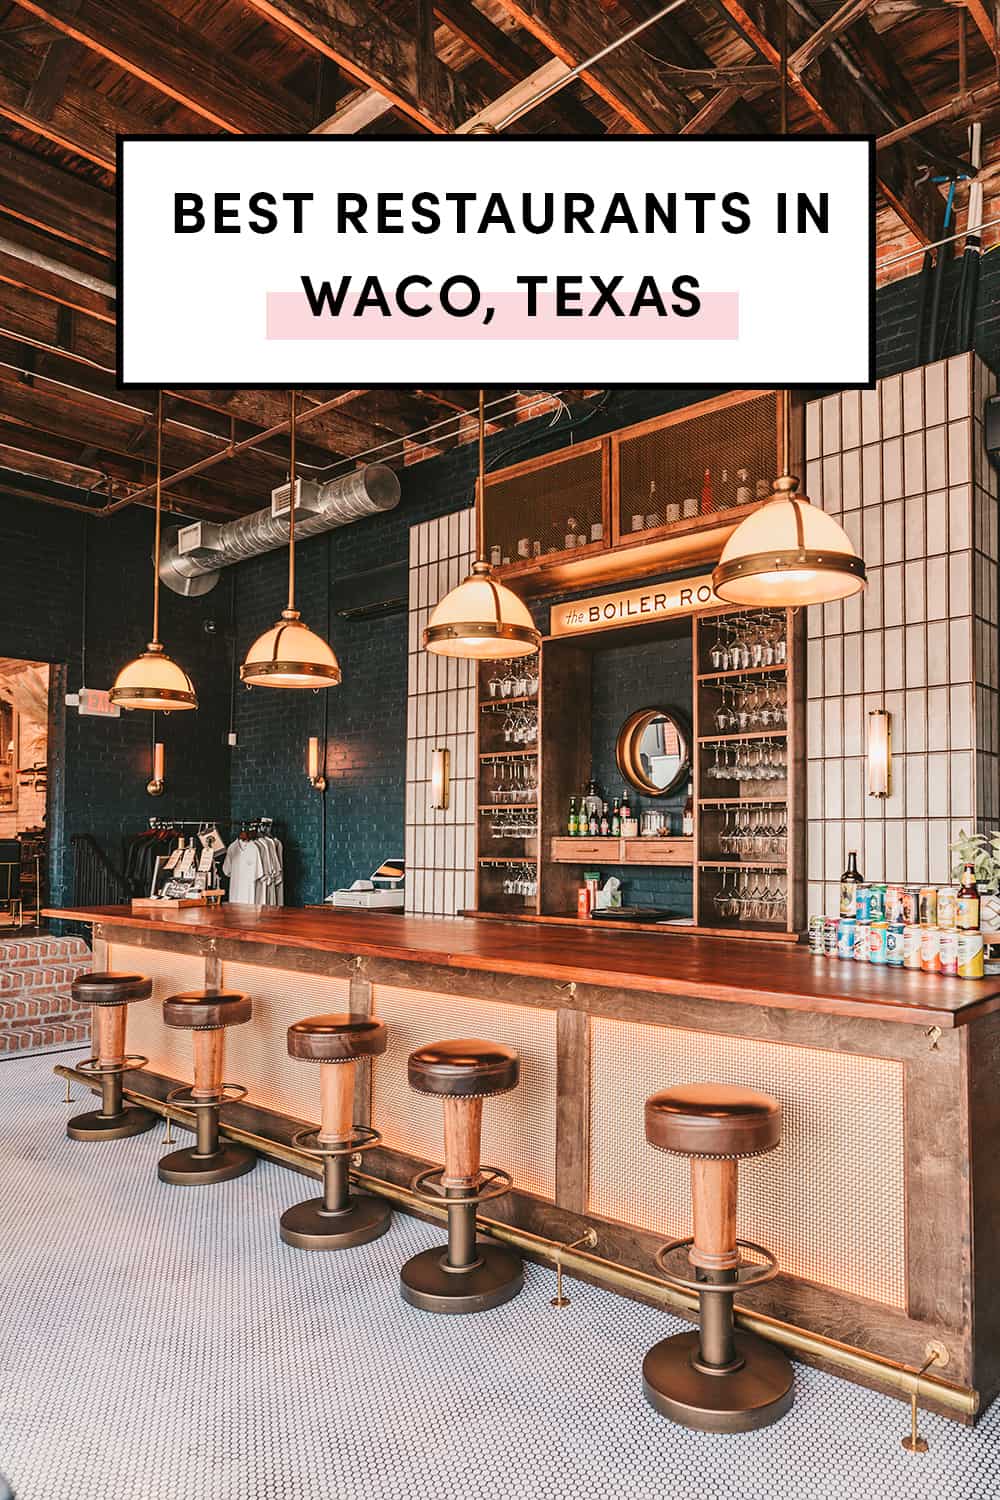 Best restaurants in Waco Texas